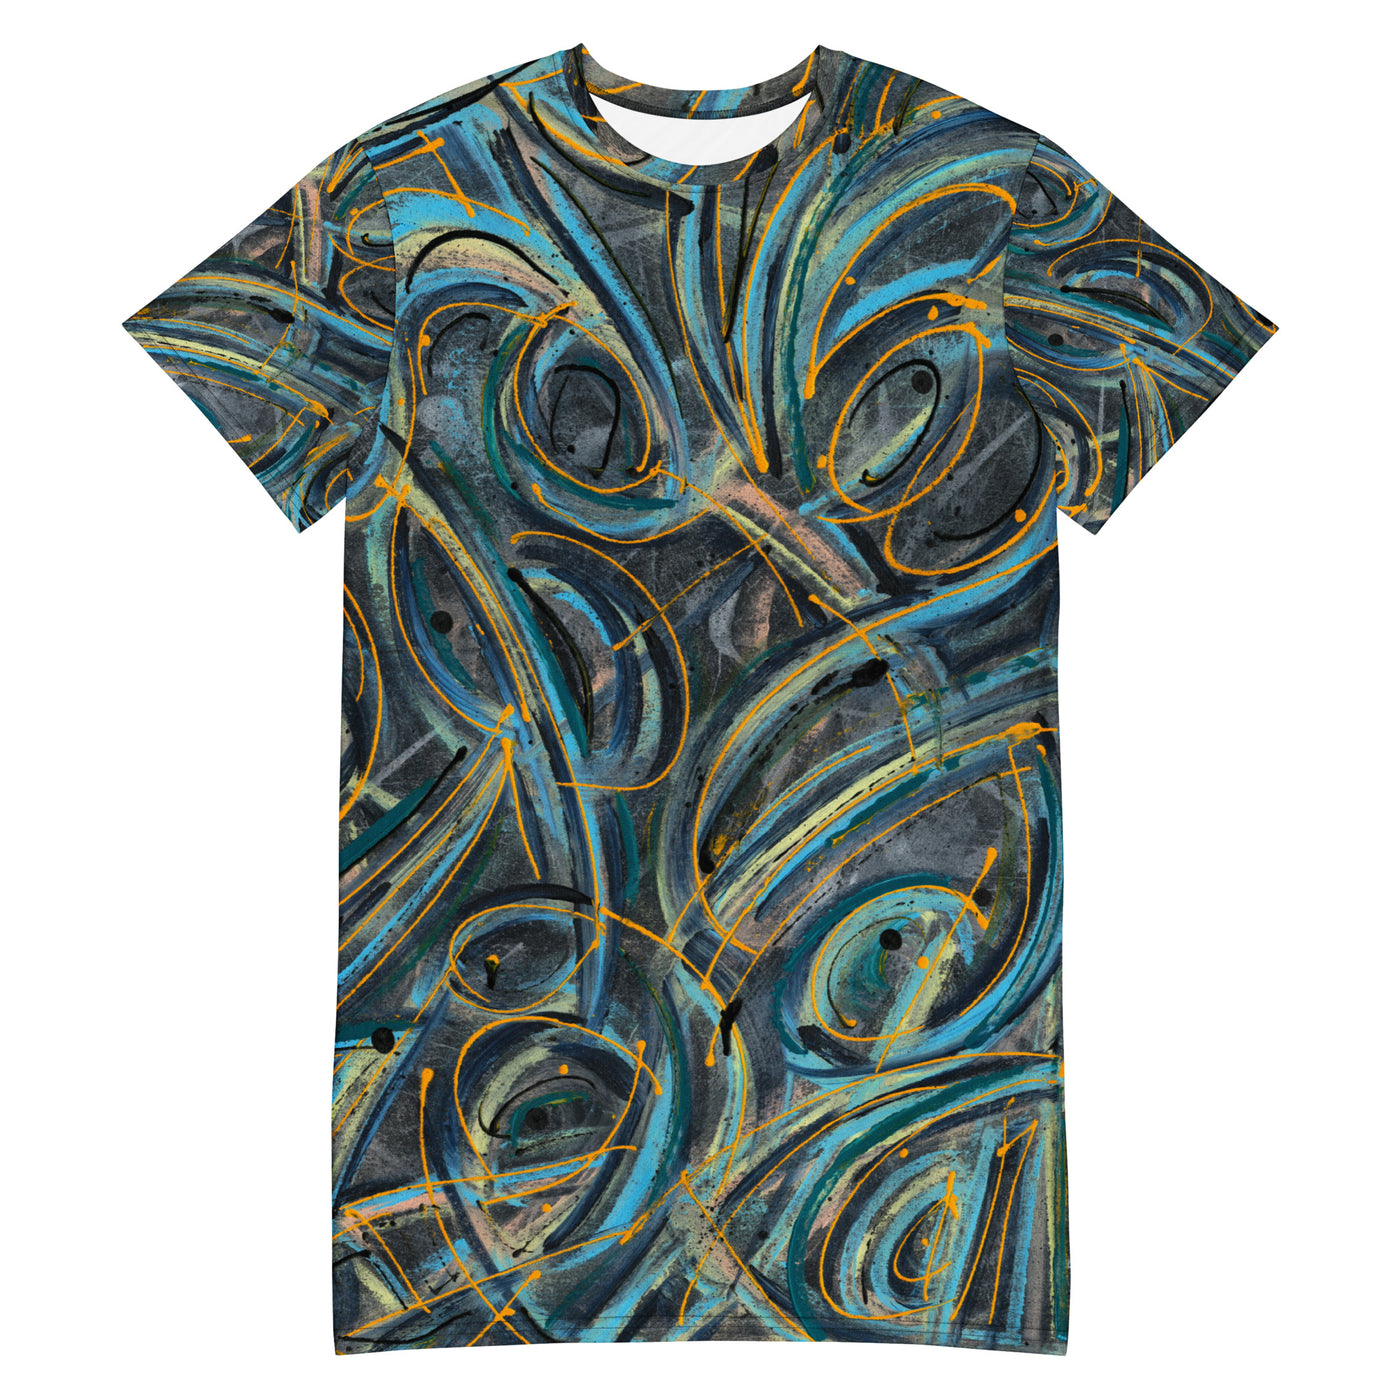 Serenity Art T-shirt dress